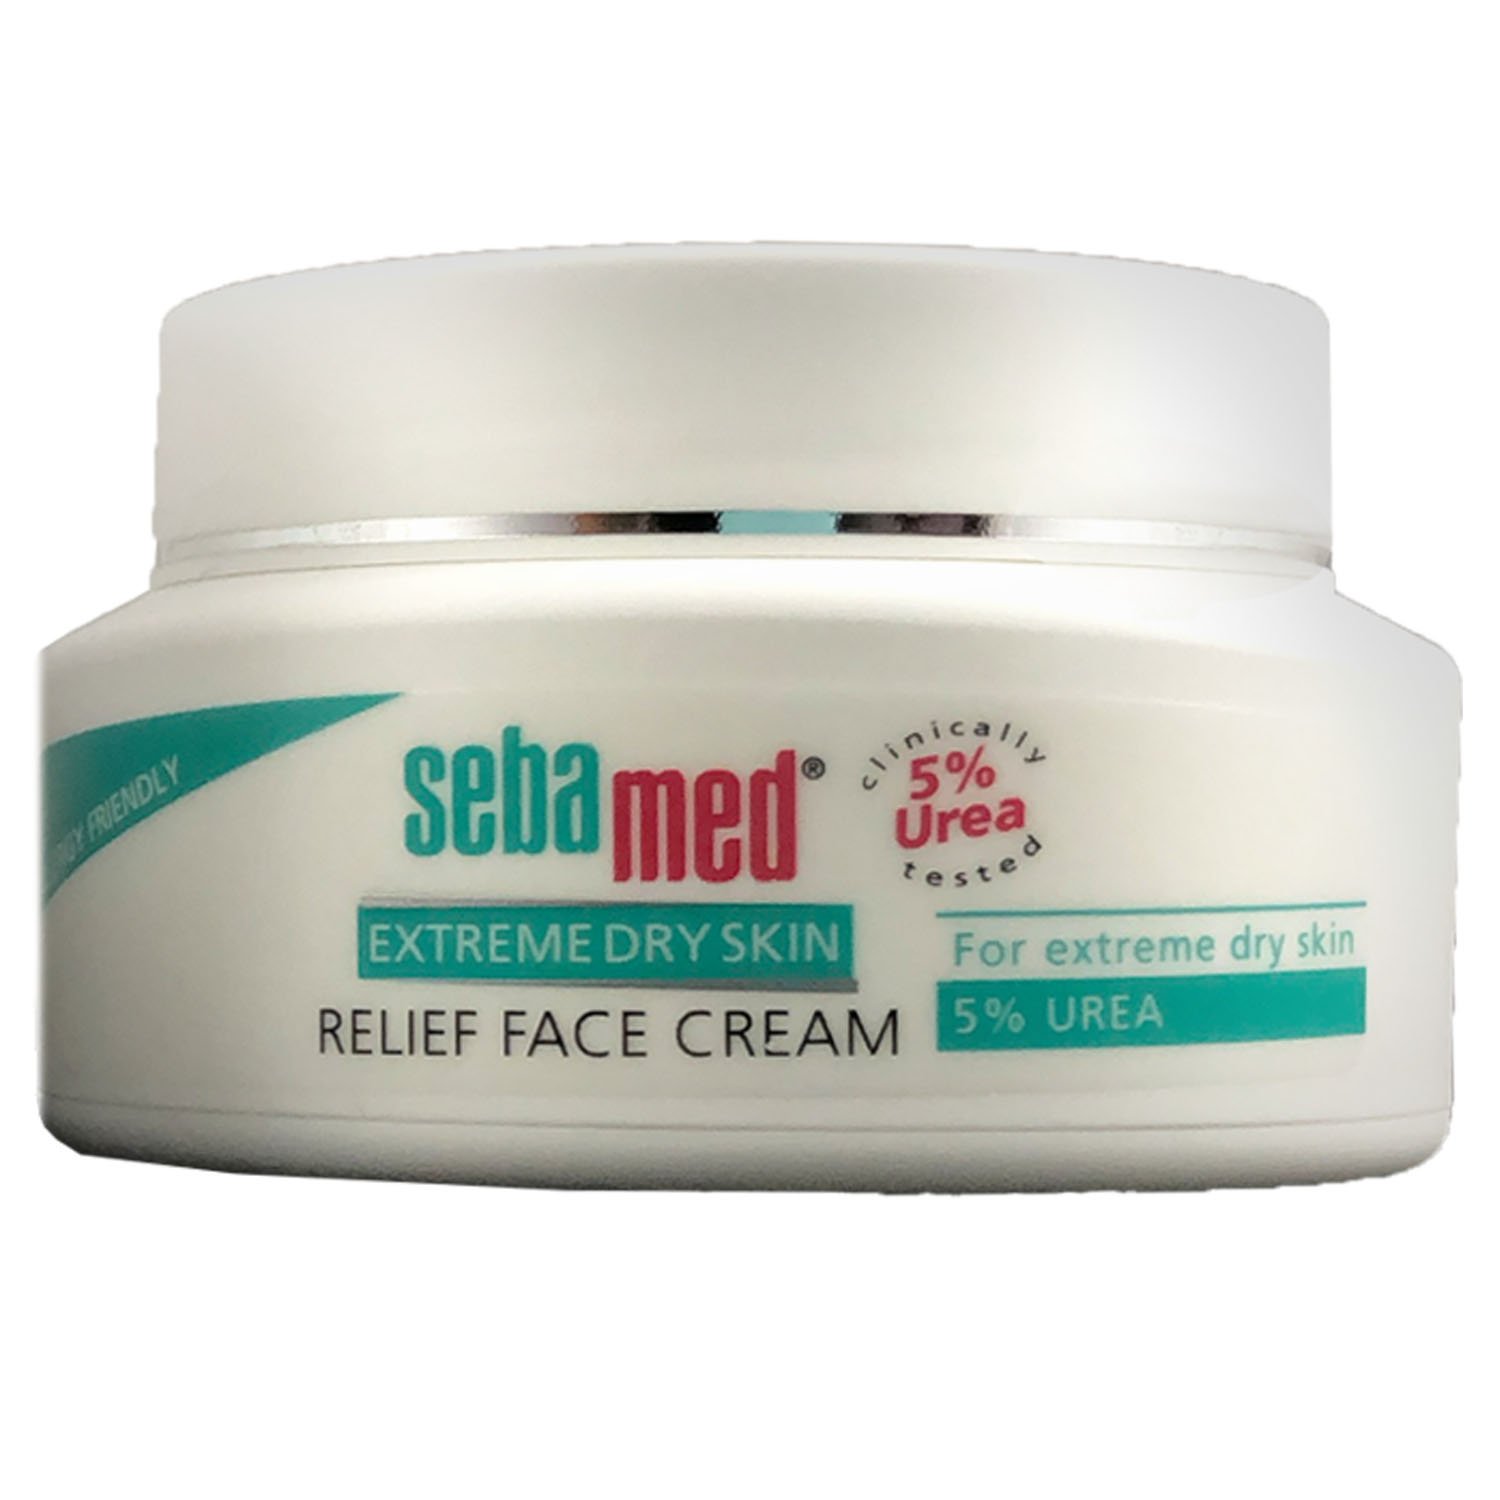 Крем Sebamed Extreme Dry Skin для дуже сухої шкіри обличчя 5%, 50 мл - фото 1